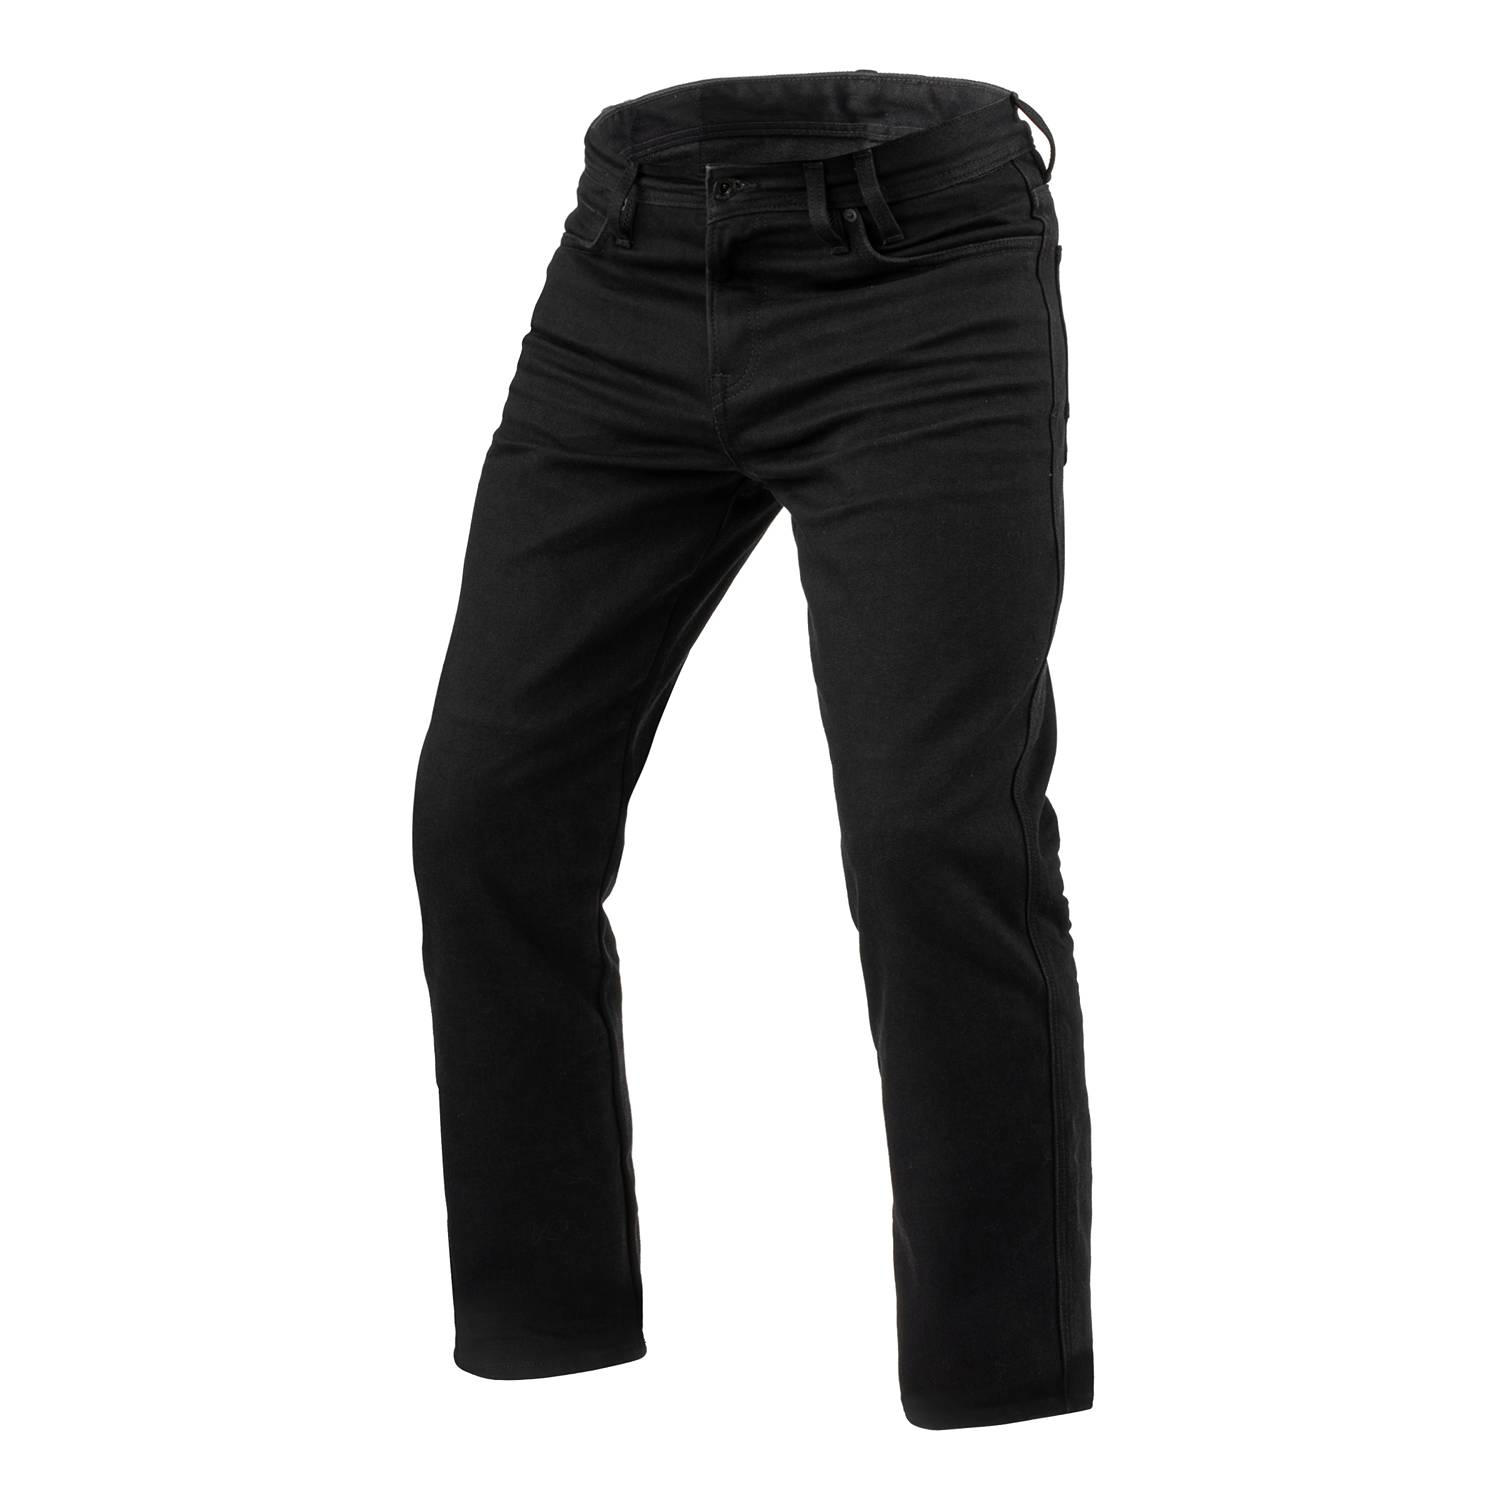 Image of REV'IT! Jeans Lombard 3 RF Black L36 Motorcycle Jeans Größe L36/W31